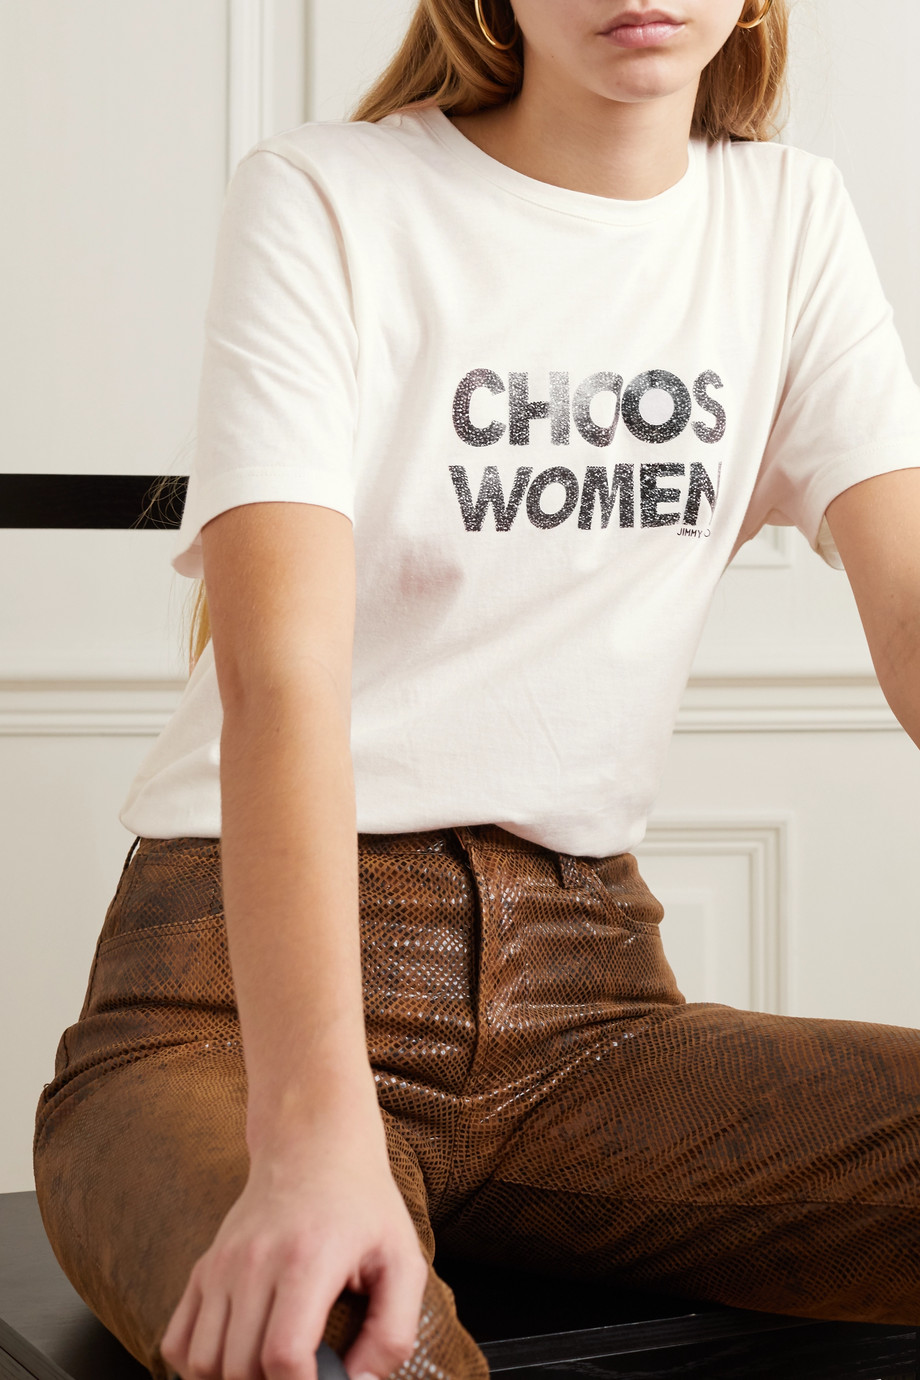 Net-a-Porter x Jimmy Choo International Women's Day T-shirt 2020.